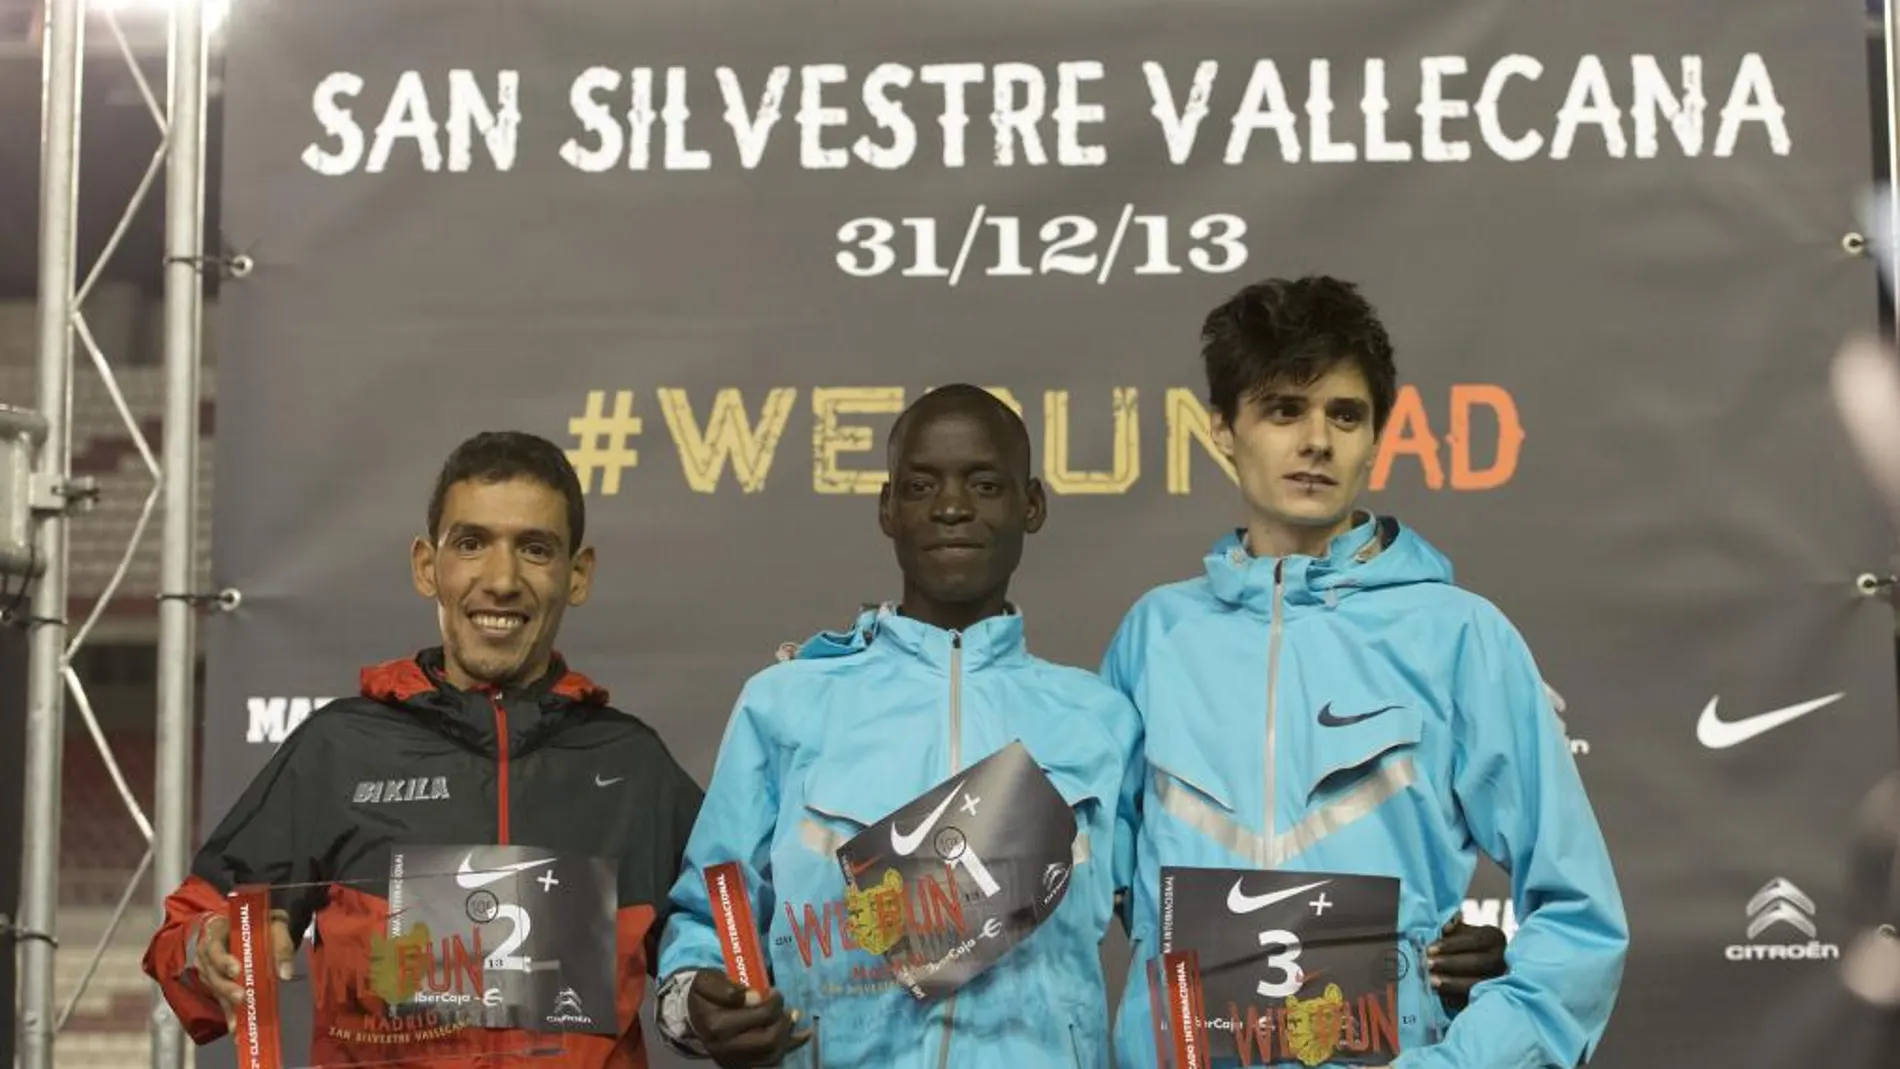 Roberto Alaiz, a la derecha de la imagen, en el podio de la San Silvestre